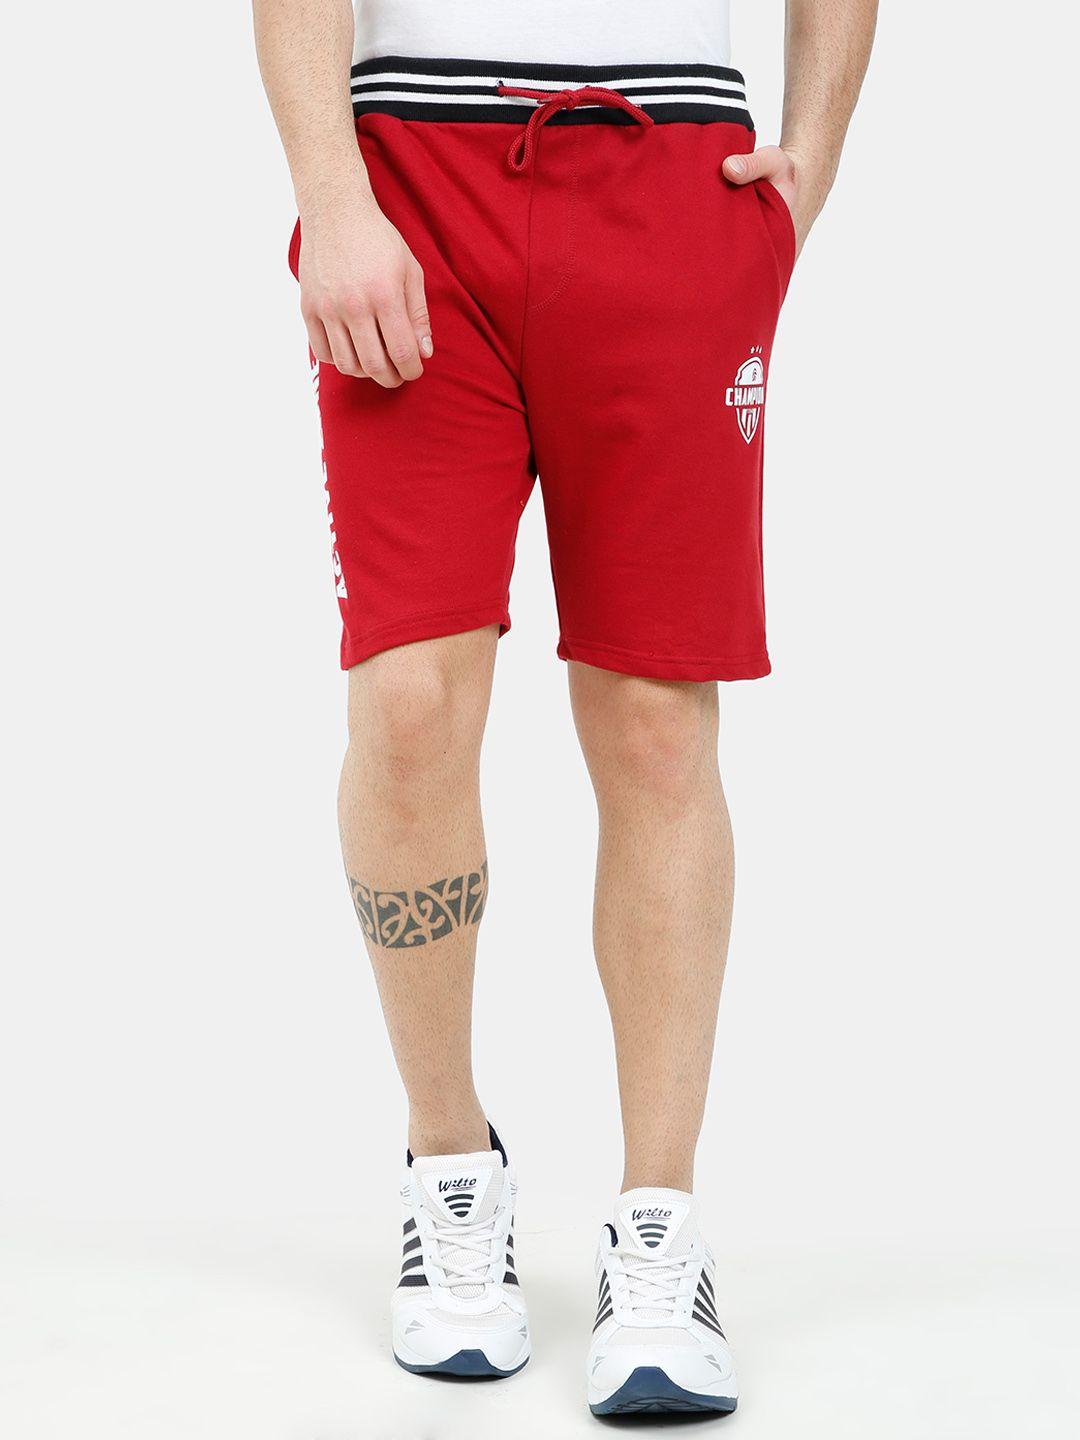 ardeur men red sports shorts